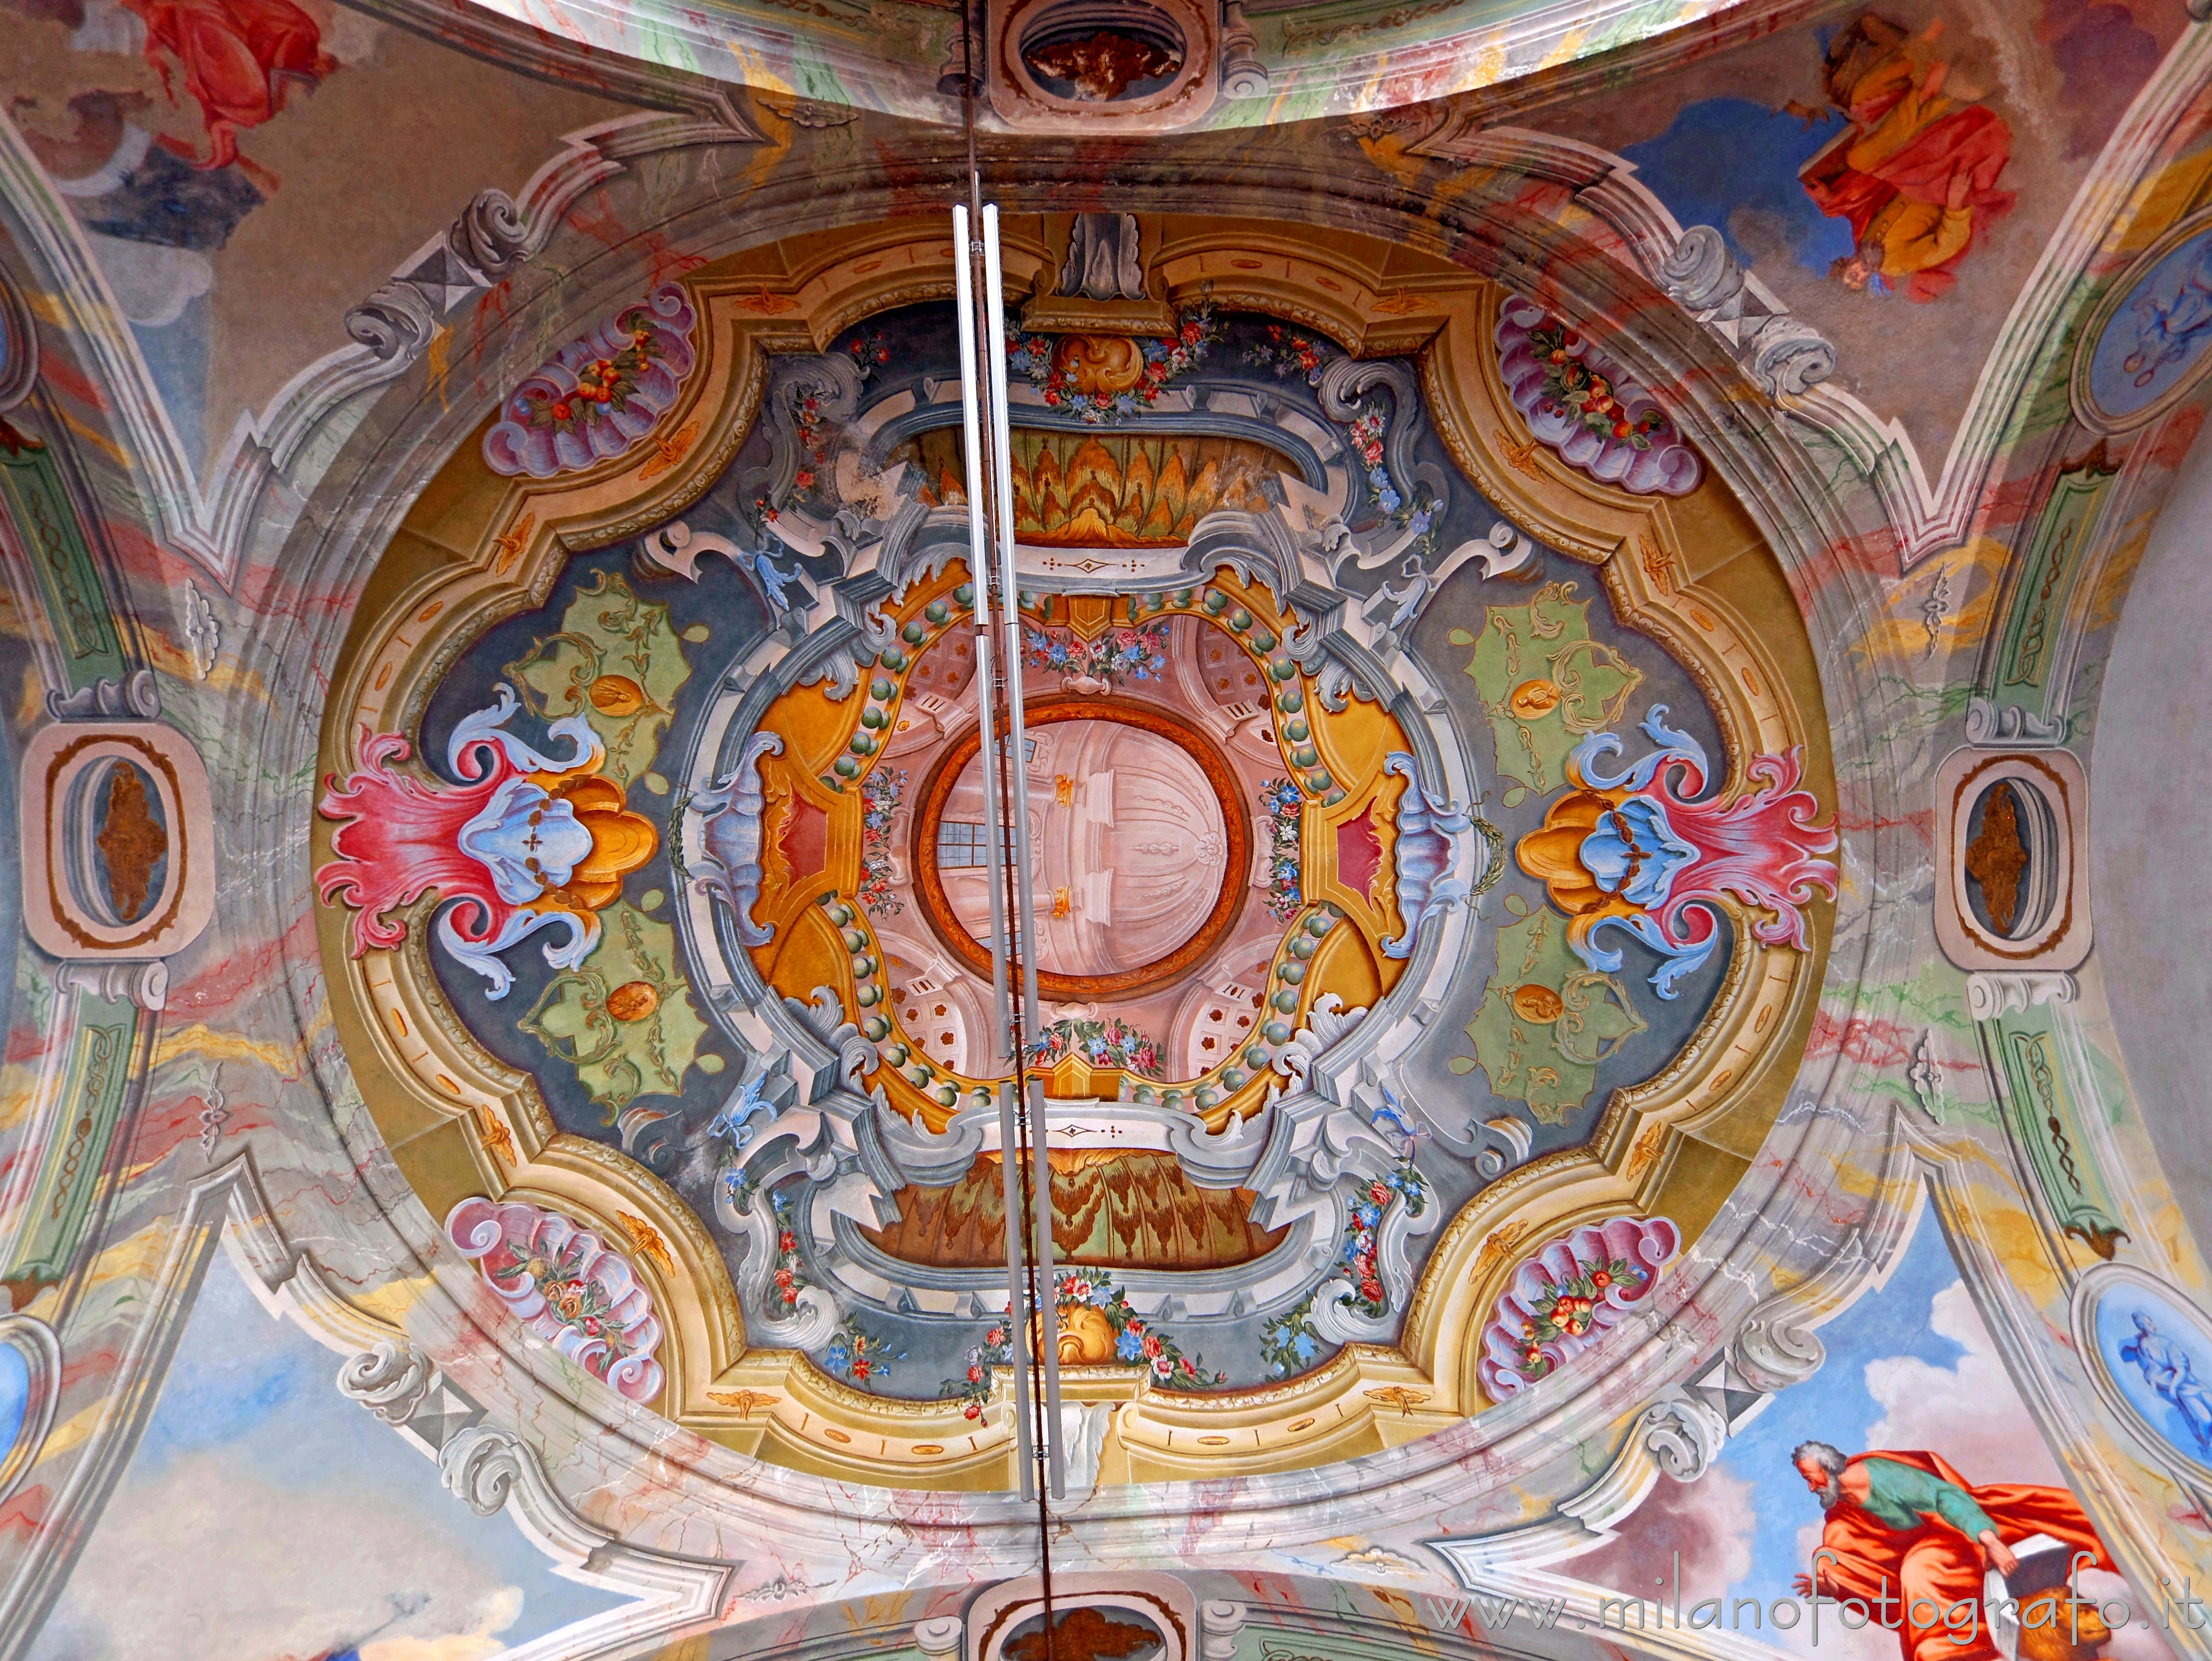 Graglia (Biella, Italy): Ceiling of the chapel of the Exercises of the Sanctuary of the Virgin of Loreto - Graglia (Biella, Italy)